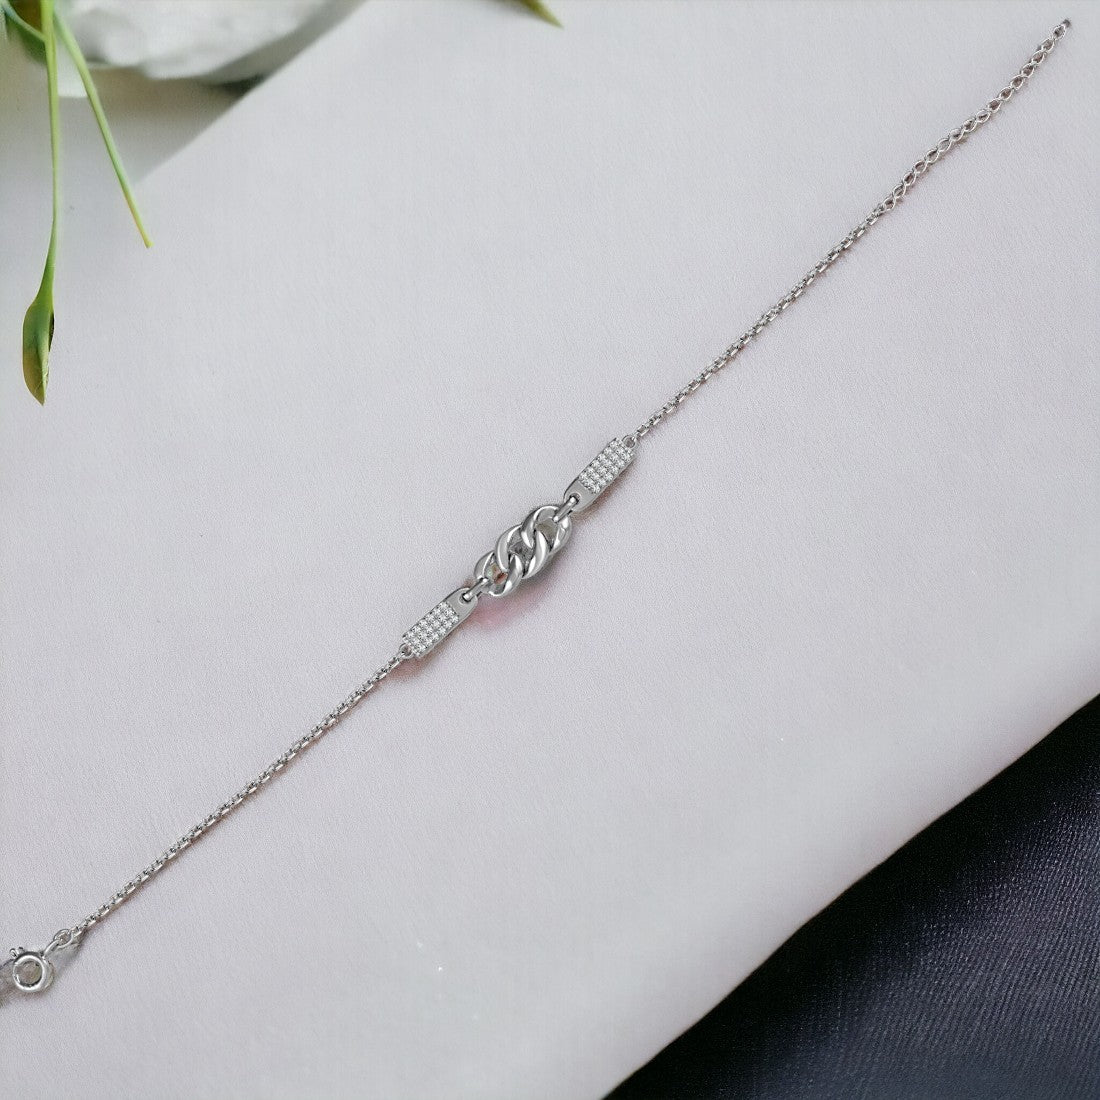 Link Chain In Silver Bracelet